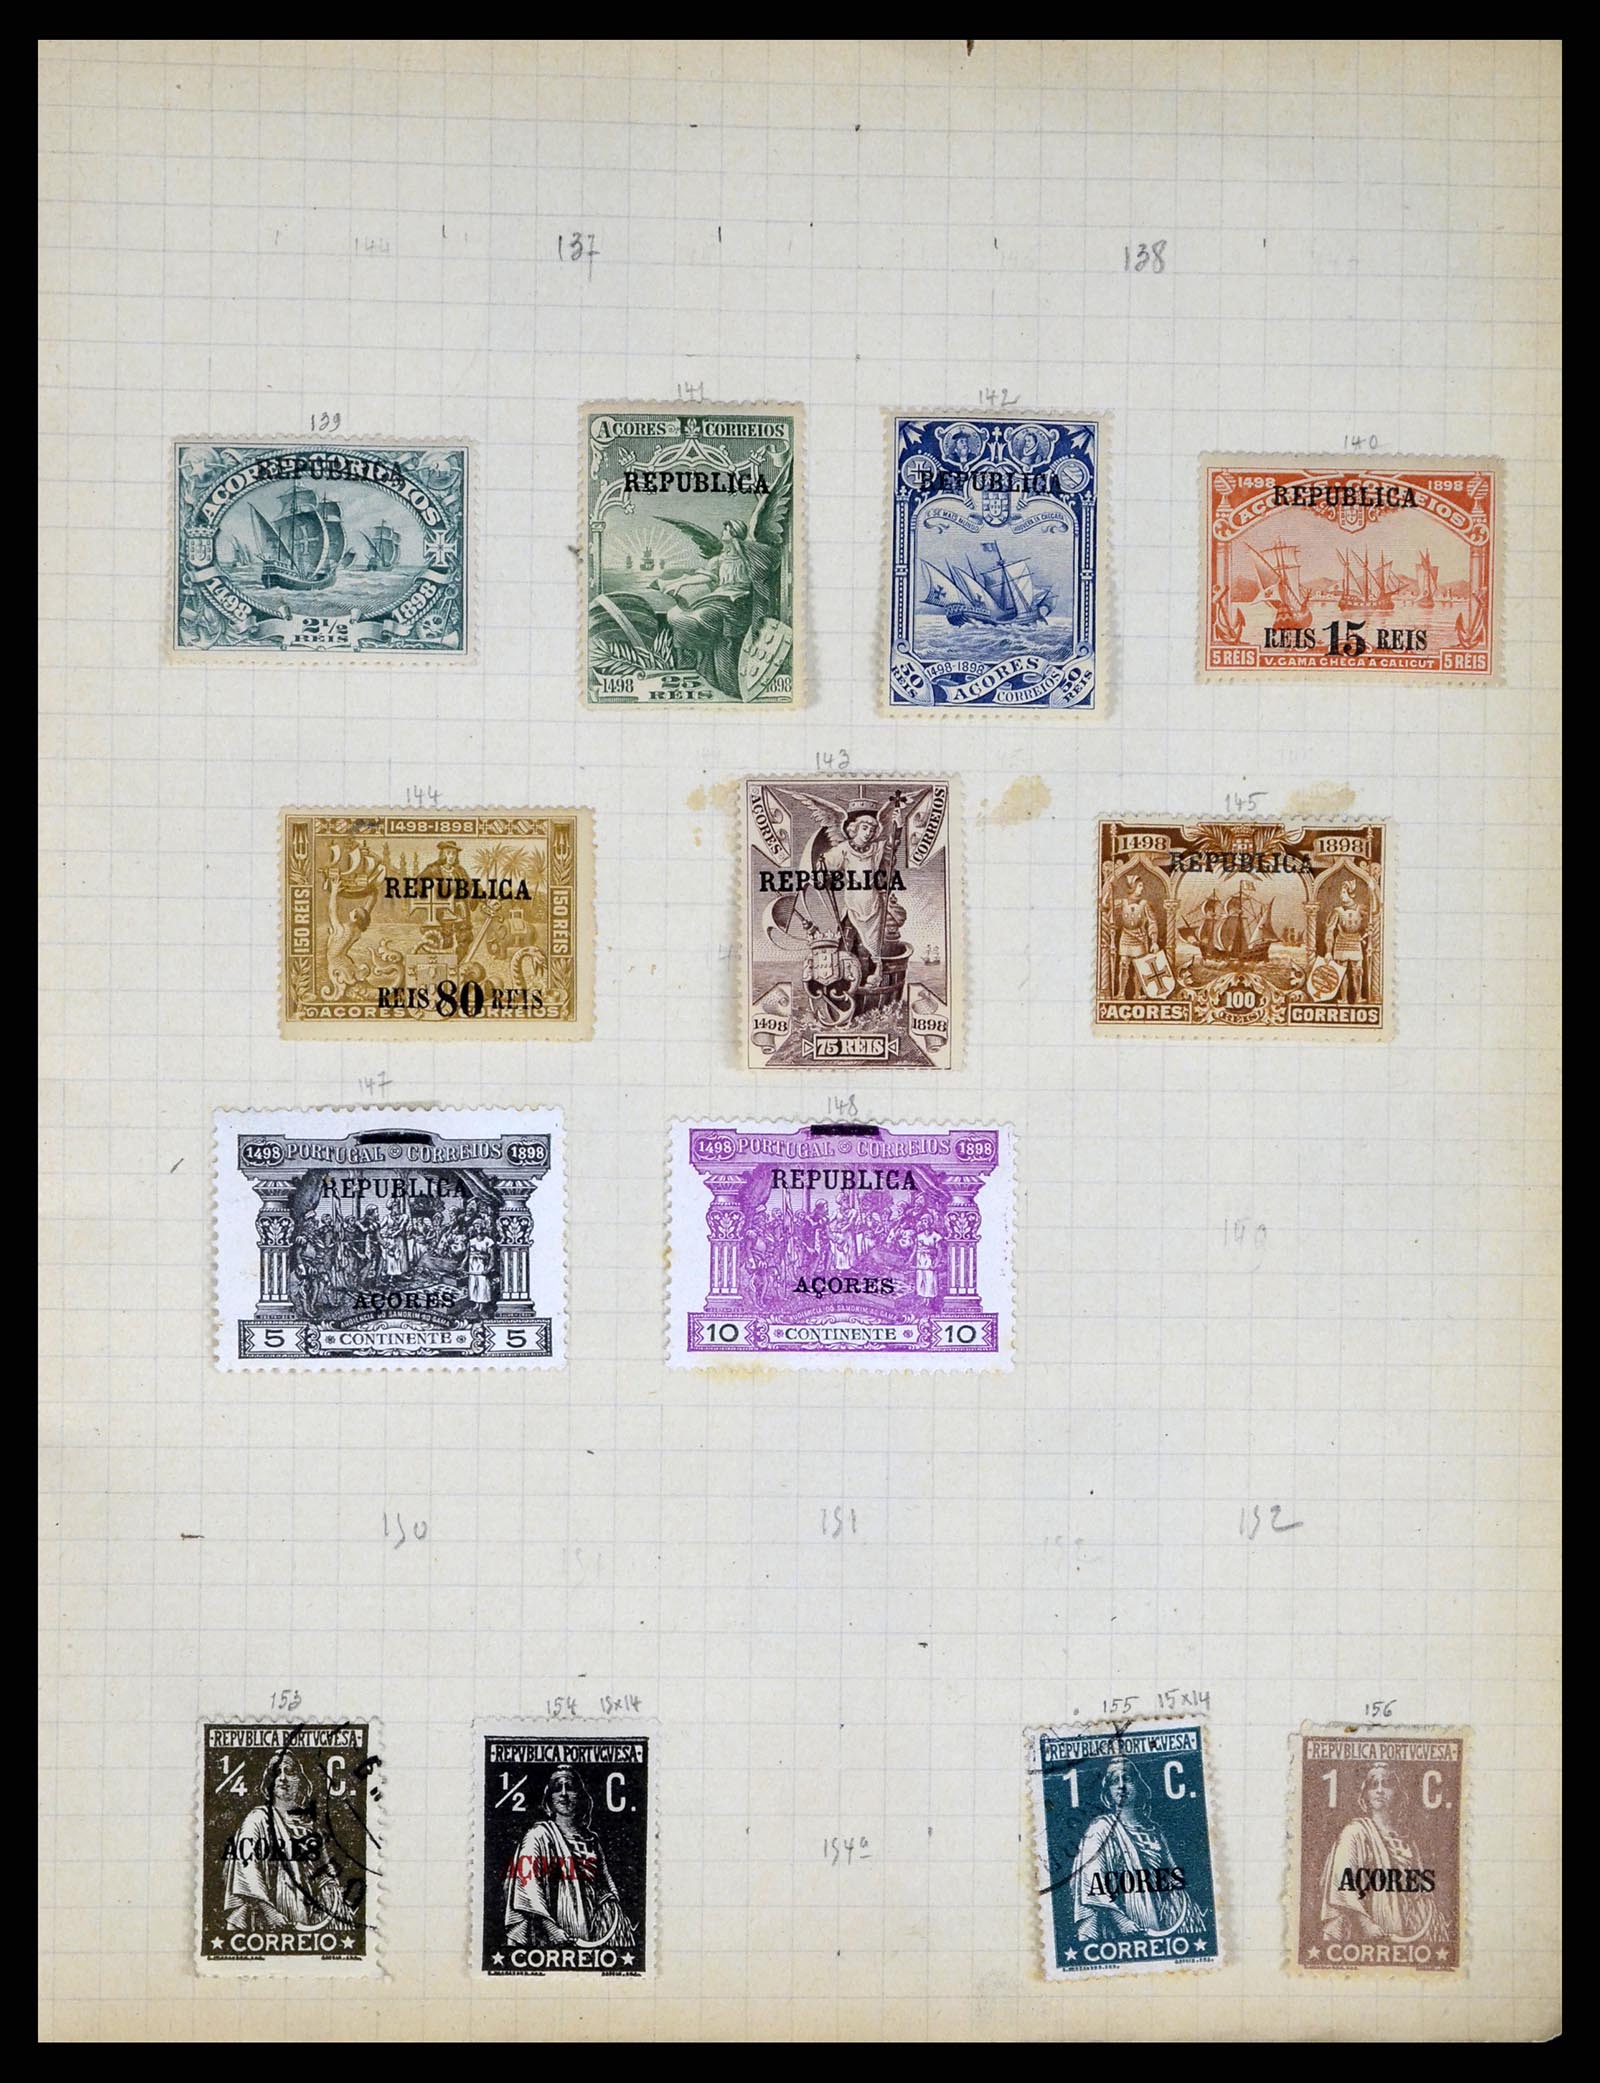 37280 087 - Postzegelverzameling 37280 Wereld klassiek 1840-1900.